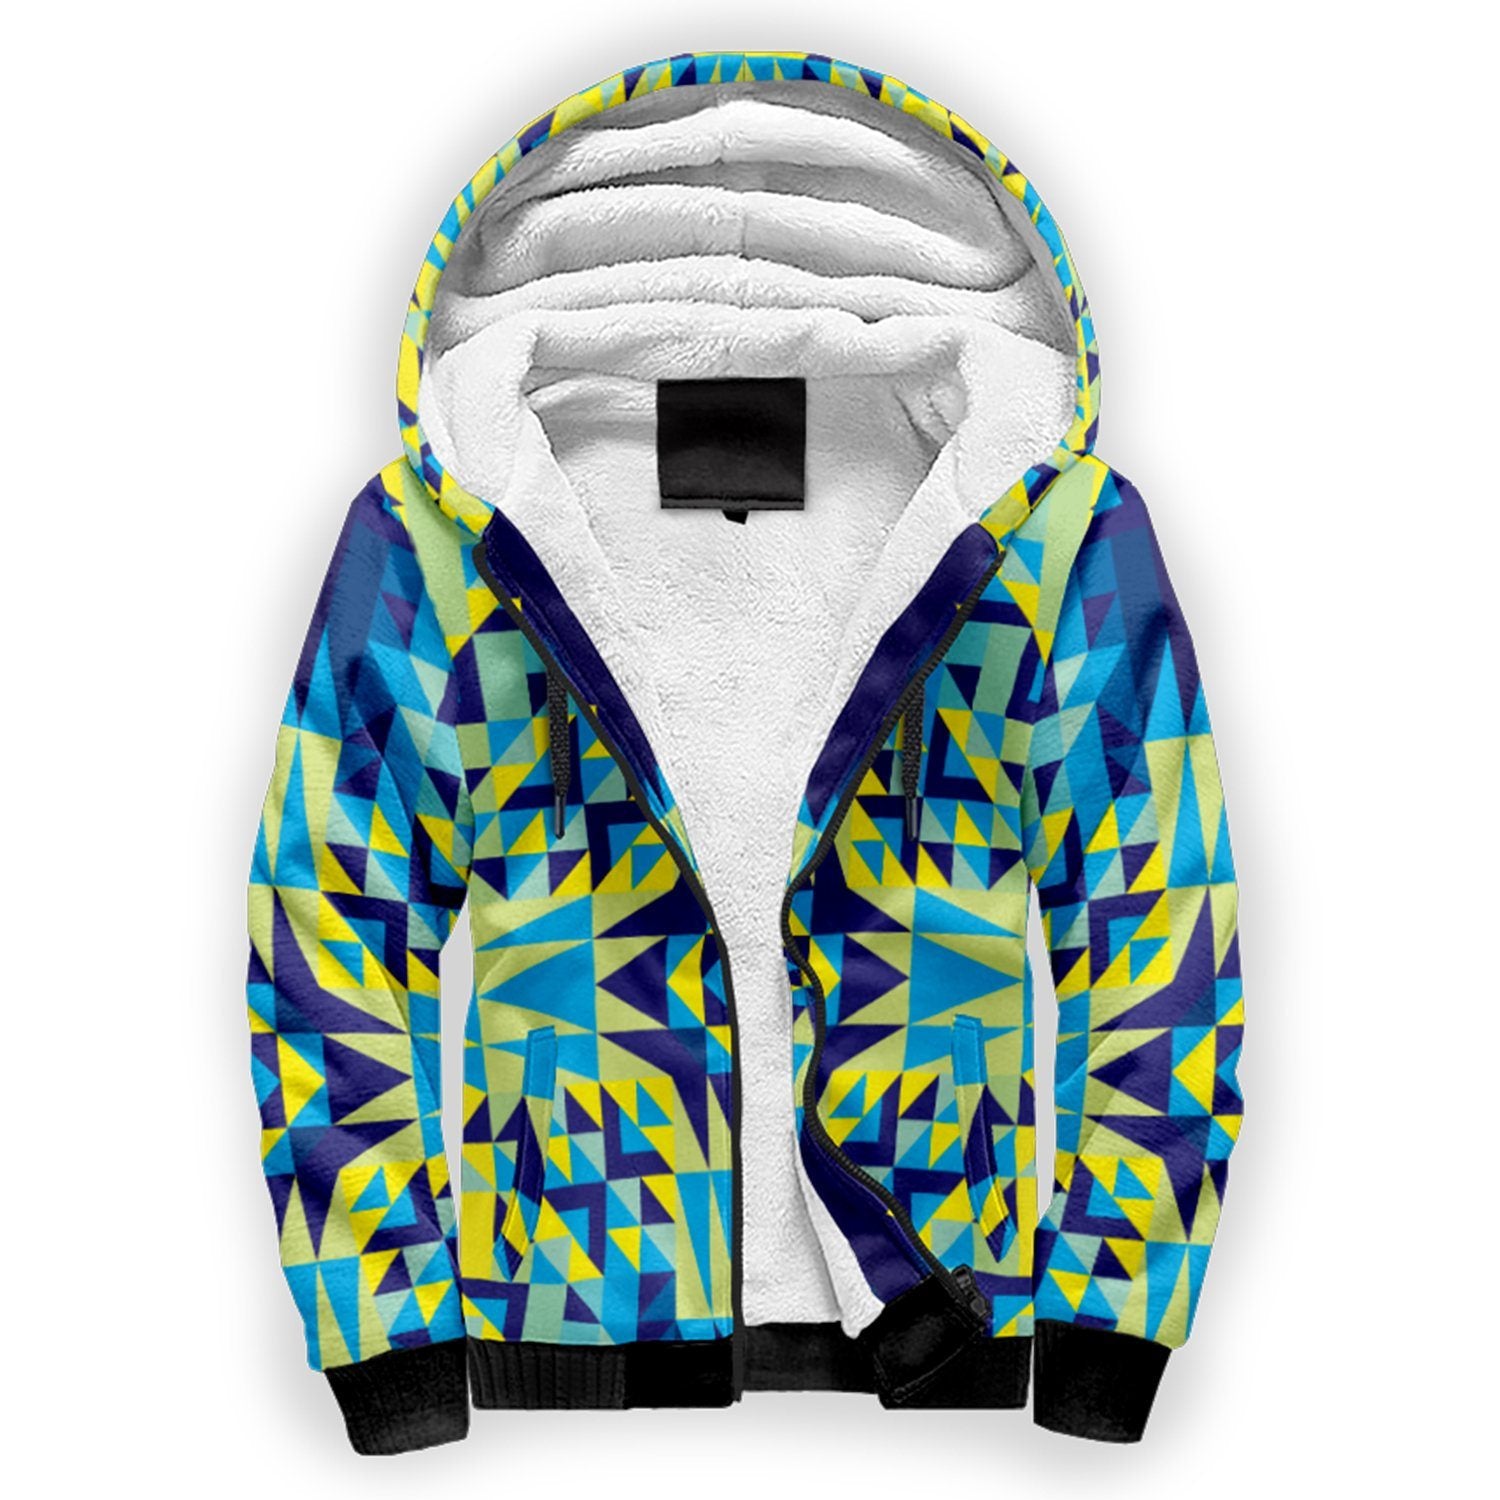 Kaleidoscope Jaune Bleu Sherpa Hoodie hoodie Herman 